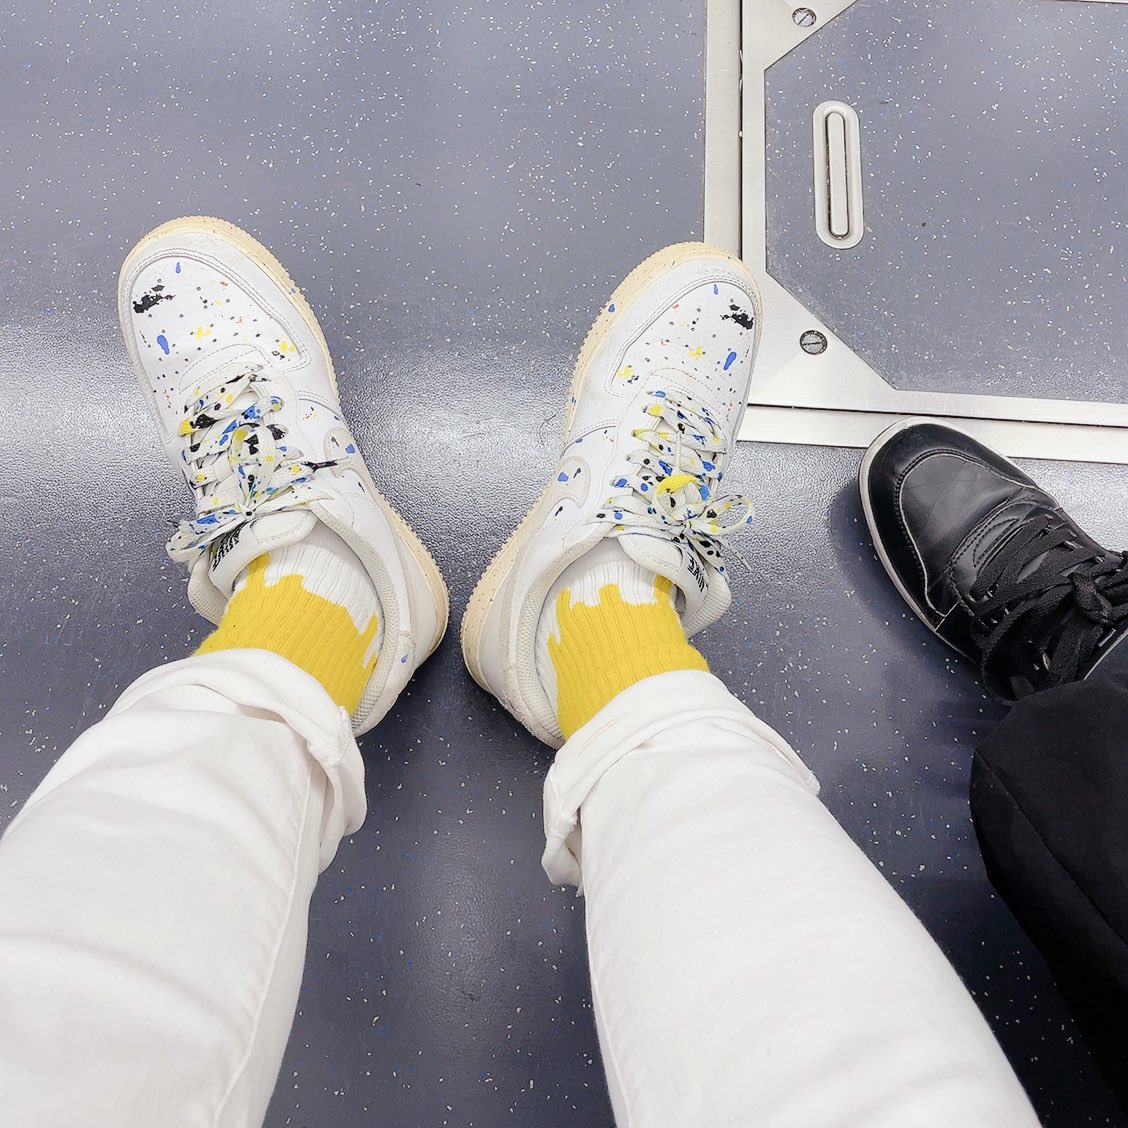 足元可愛い。

お気に入りの靴下のブランド
『LIXTICK』とともに。

今日は珍しく、横浜方面へ行ってみる。